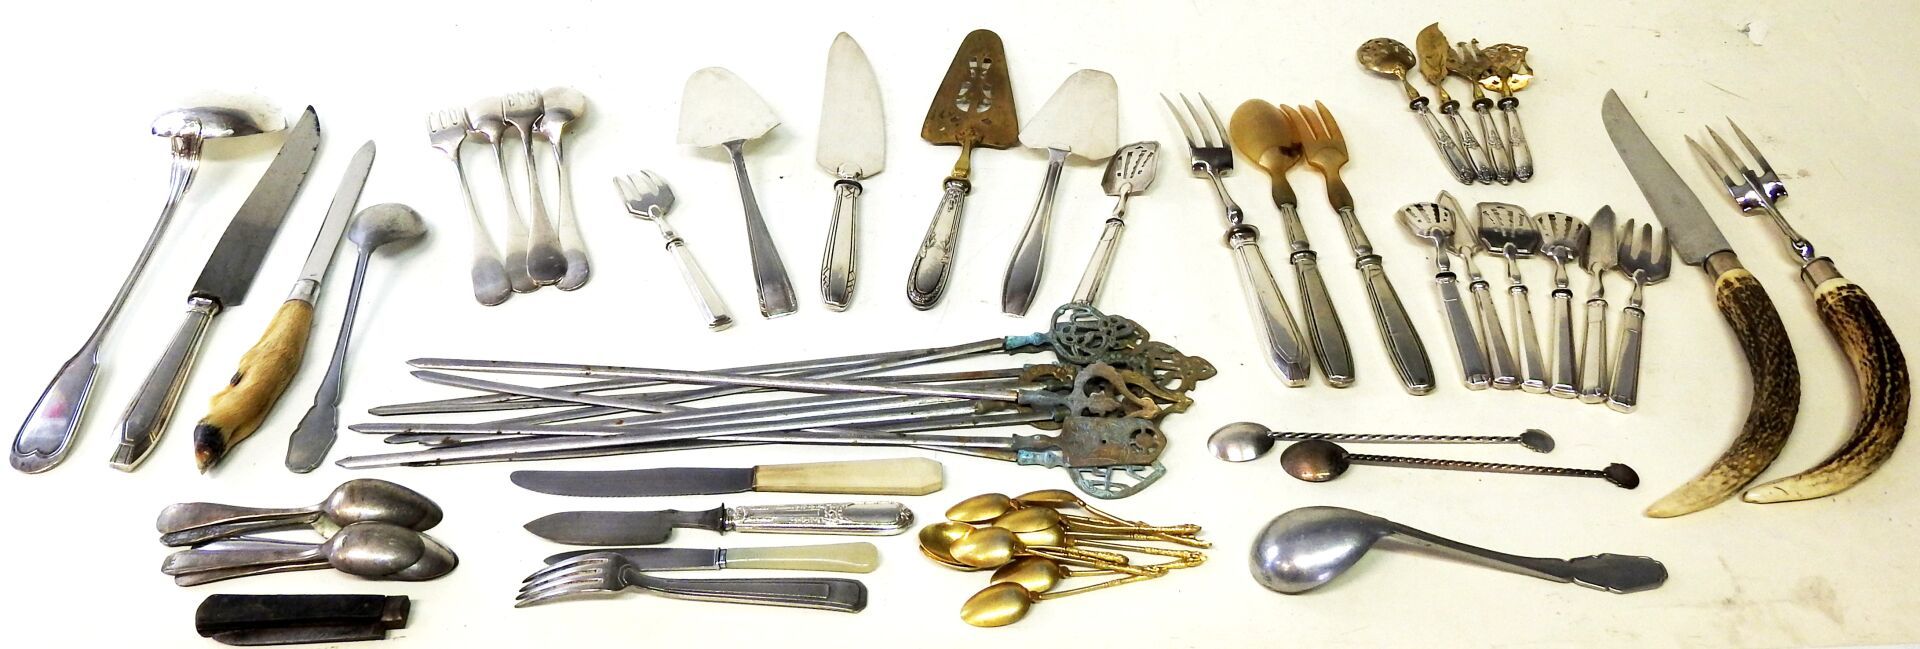 Null 一批重要的银制和镀银餐具，包括餐具、派盘、餐具和其他。

如是